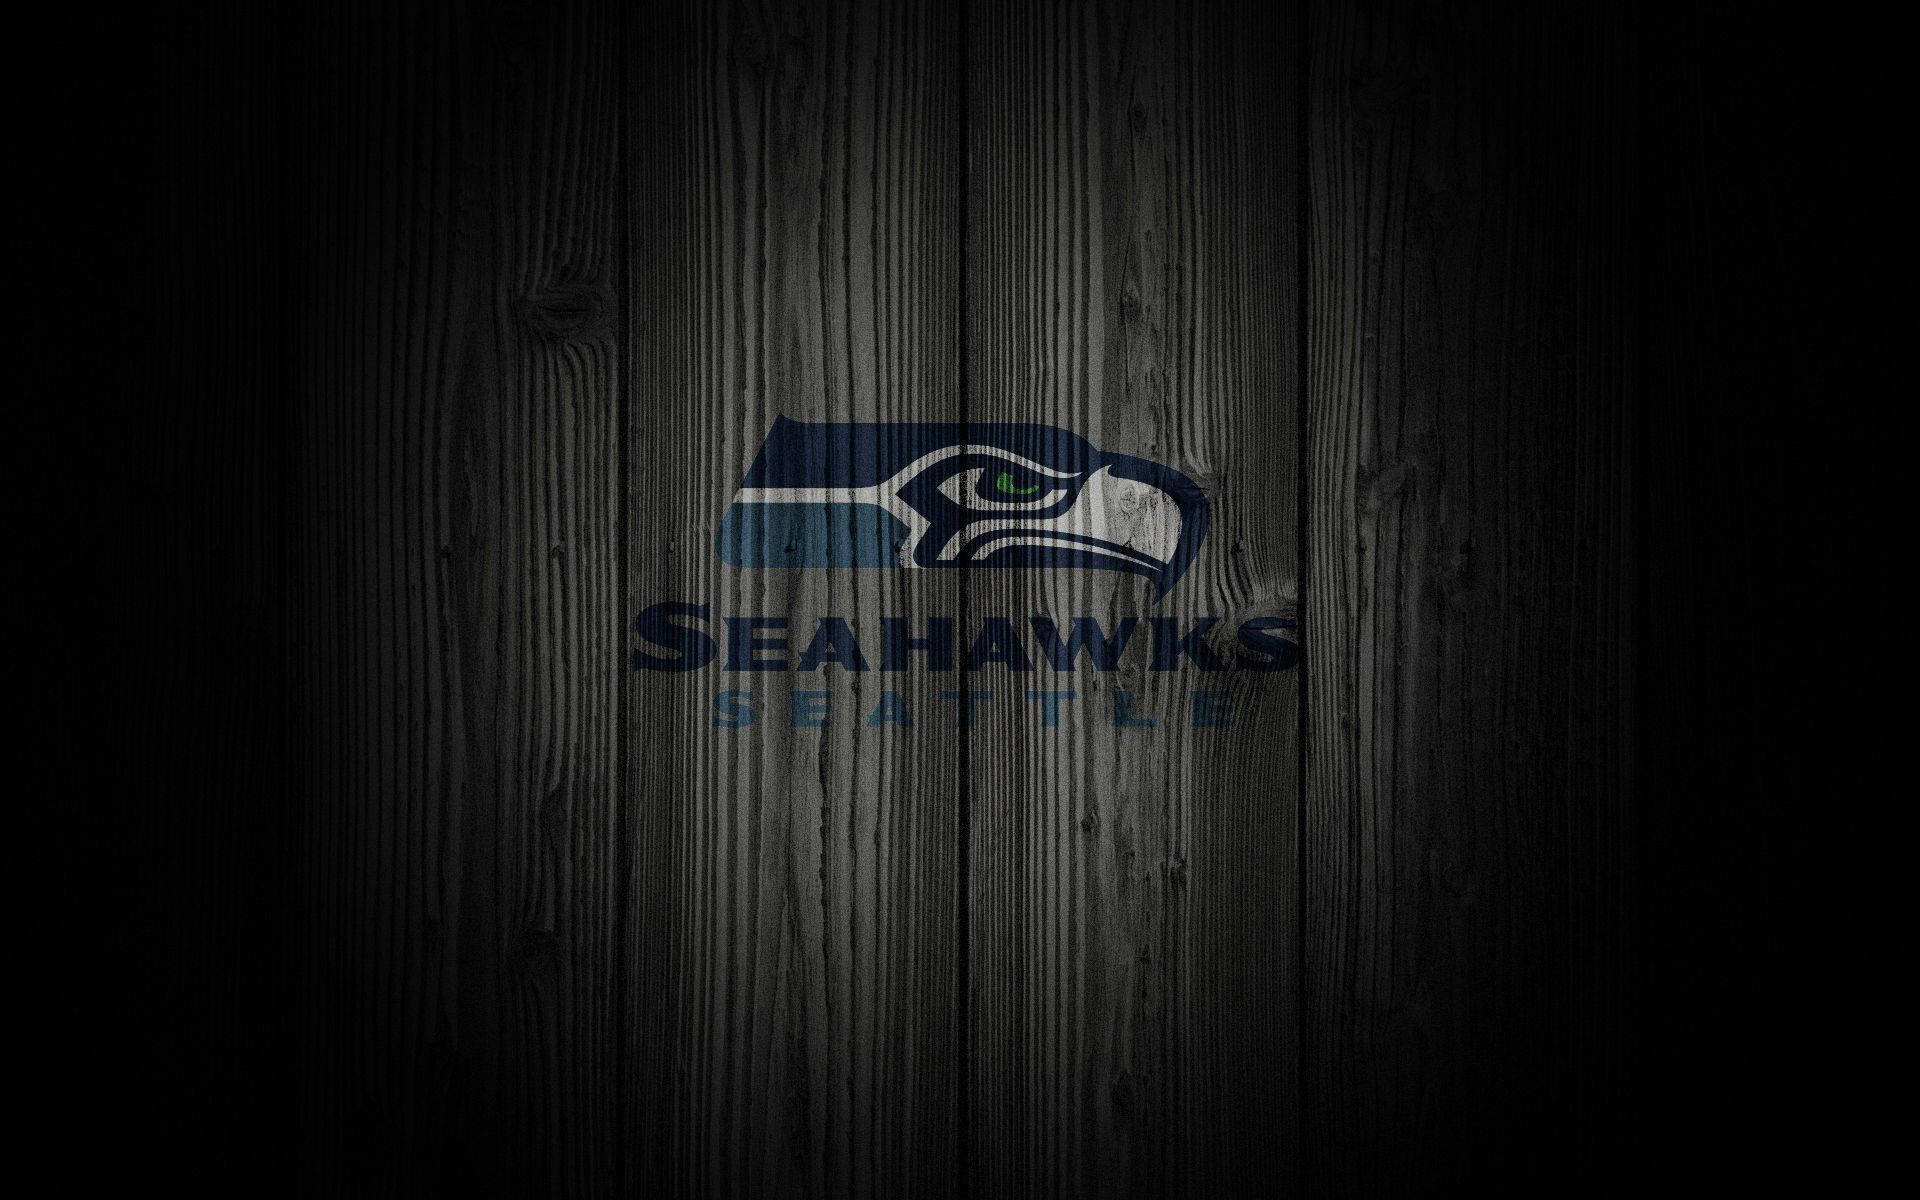 Seahawks Desktop Background